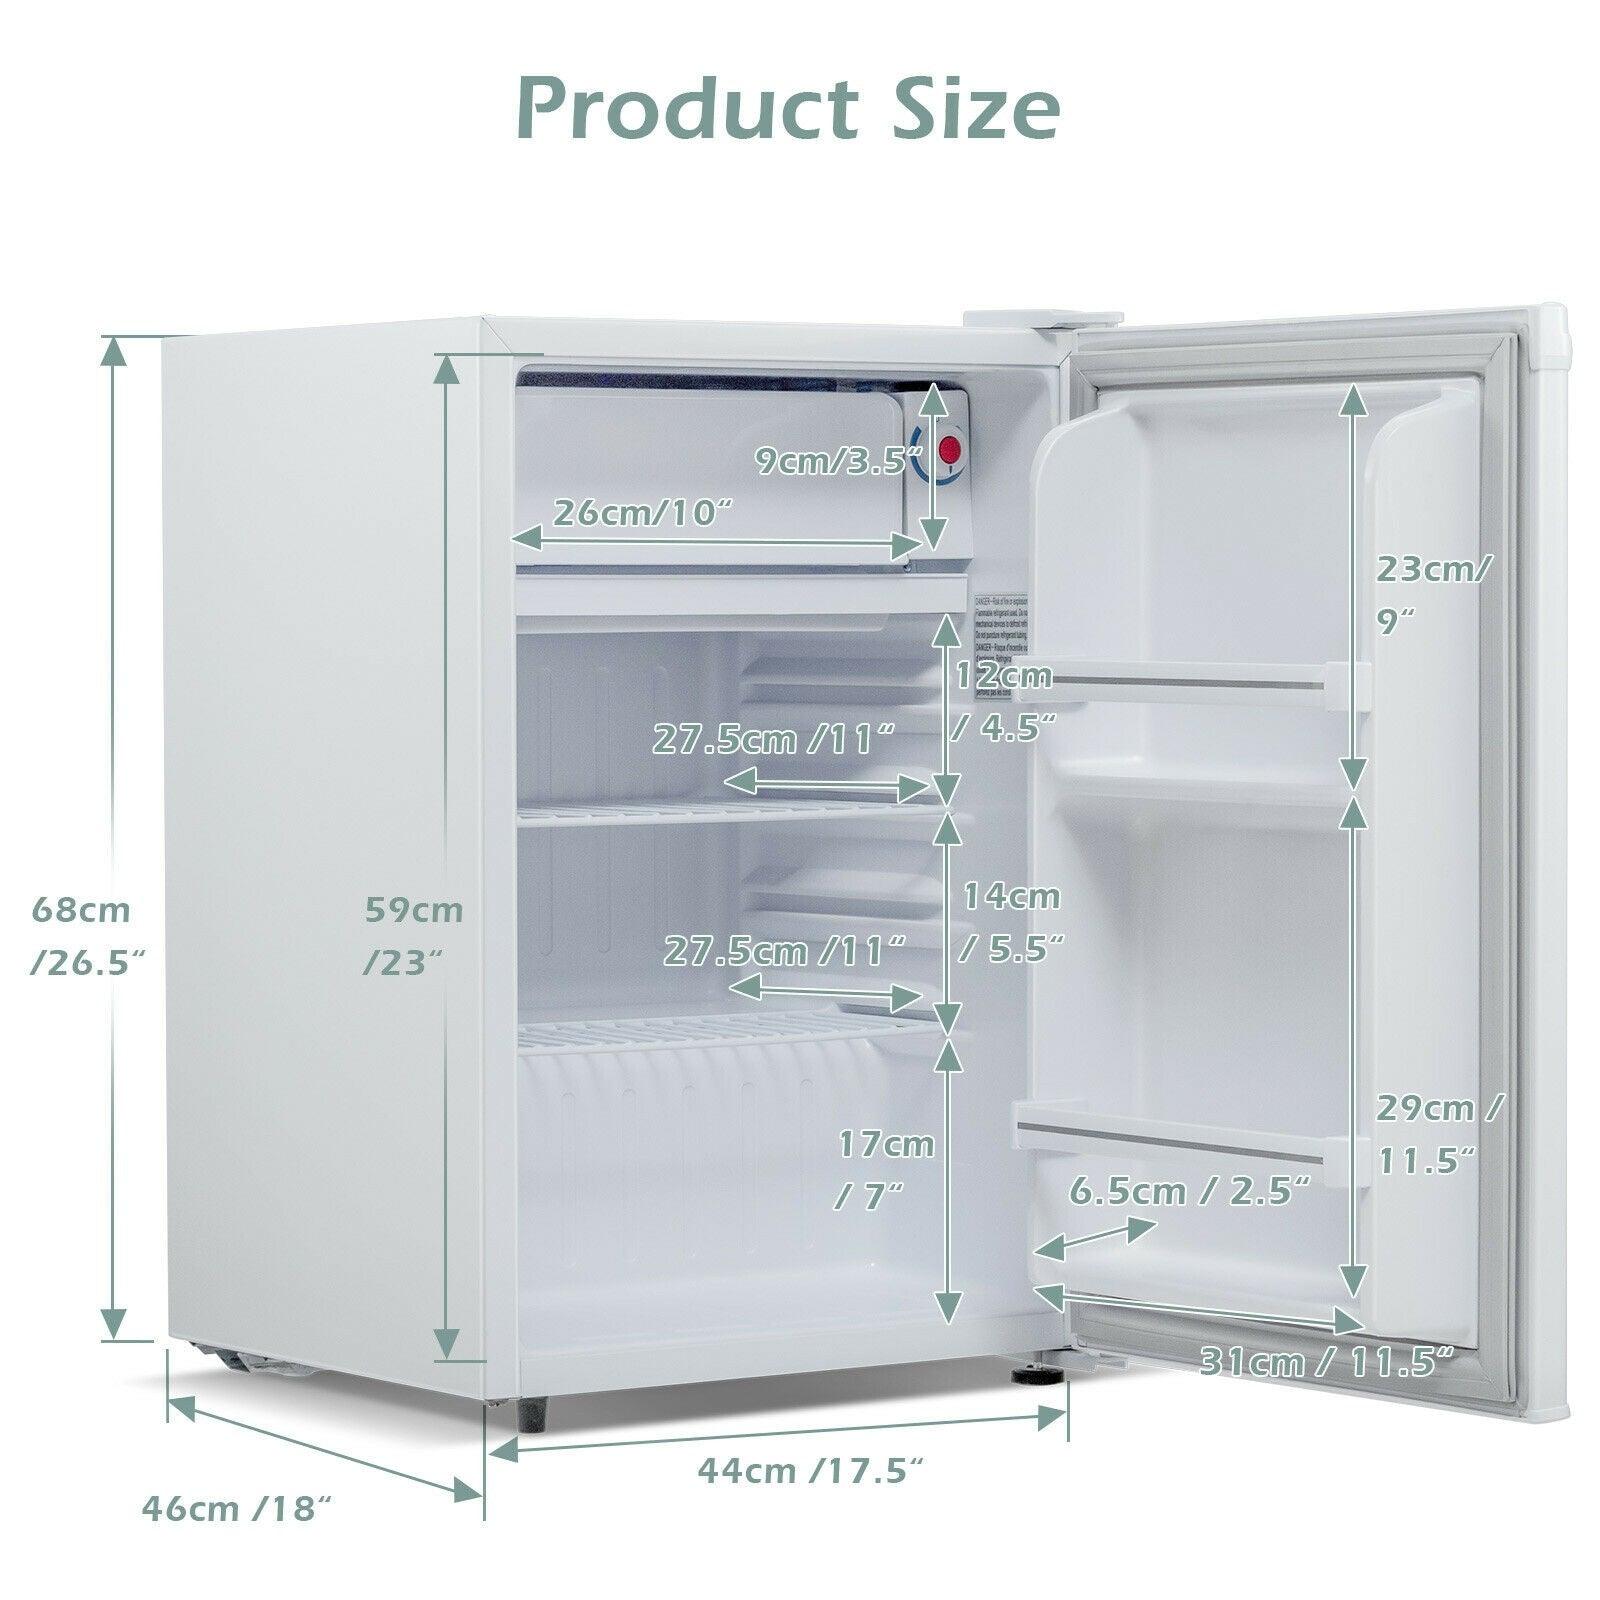 Costway Refrigerator EP24435US, Compact Single Door with Freezer 2.5 Cu Ft - YOURISHOP.COM